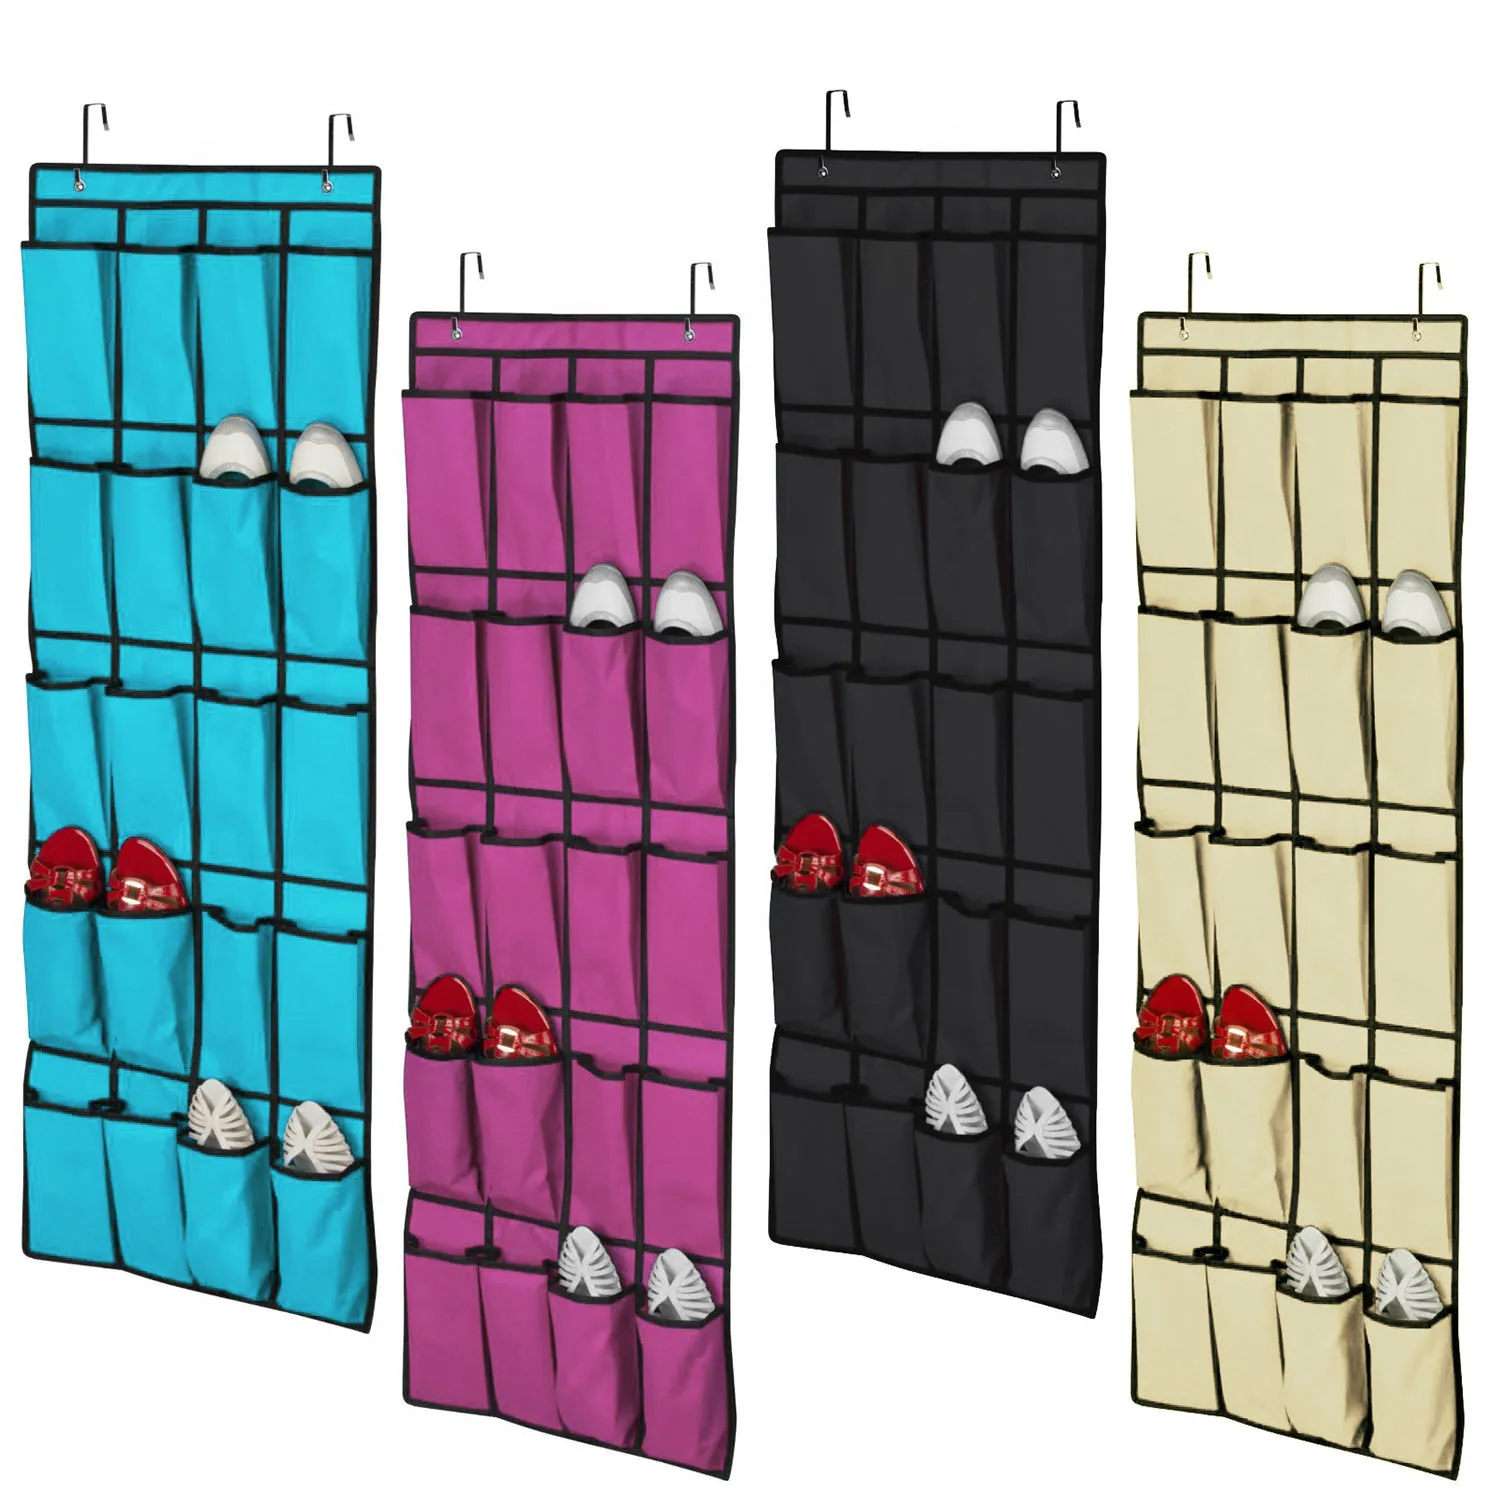 Heet verkoop 20 zak niet-geweven stof over de deur schoen organizer ruimte saver rack opknoping opslag hanger